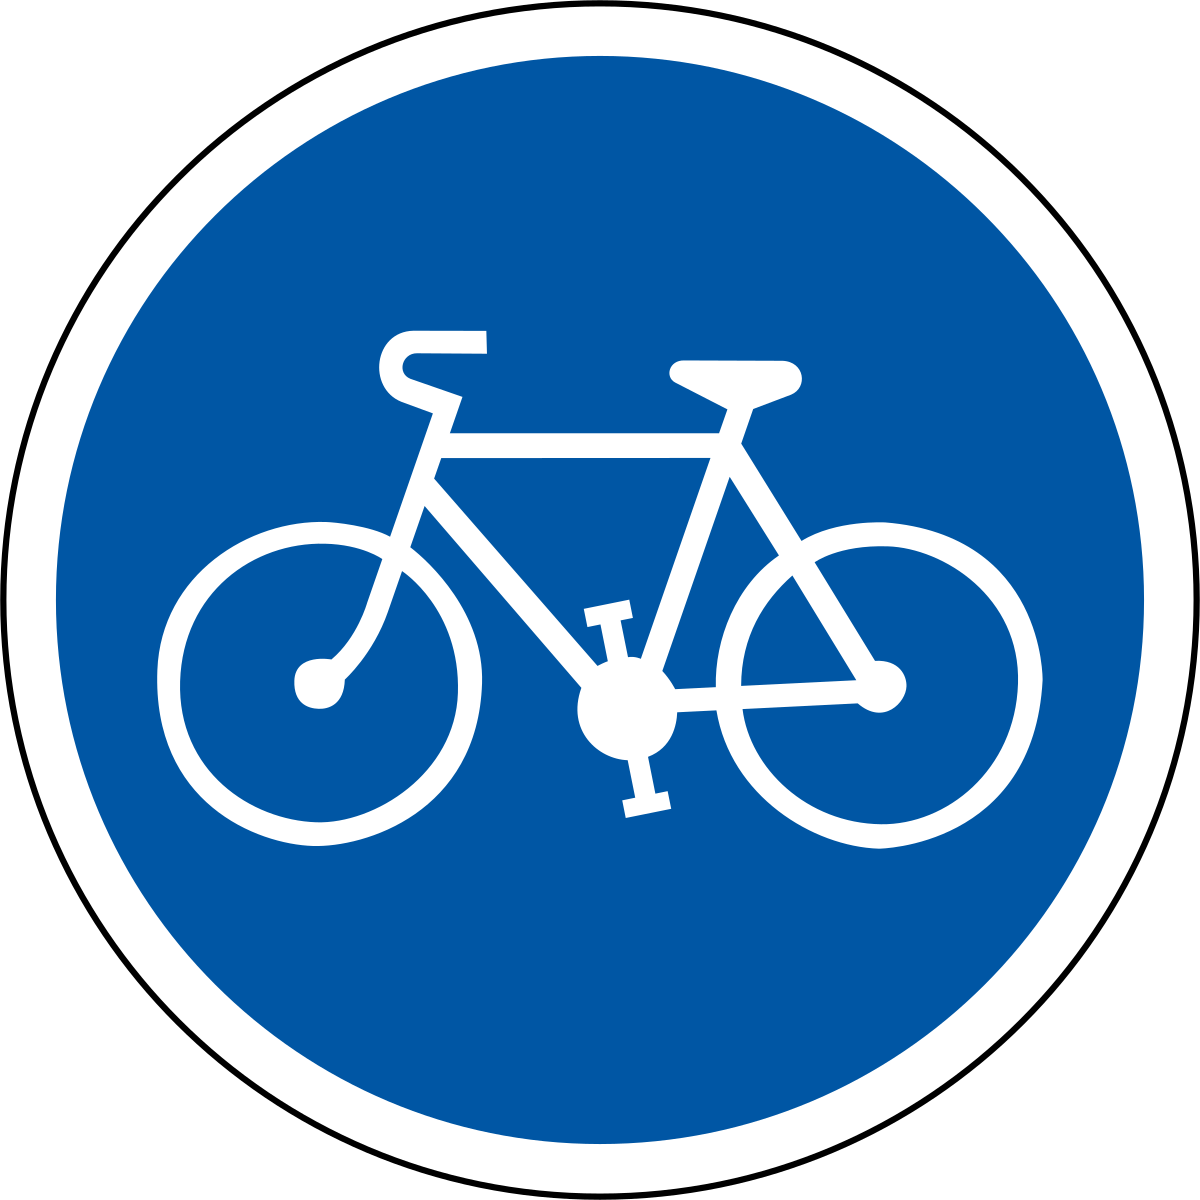 Panneau de signalisation d une piste ou bande cyclable obligatoire en France — Wikipédia